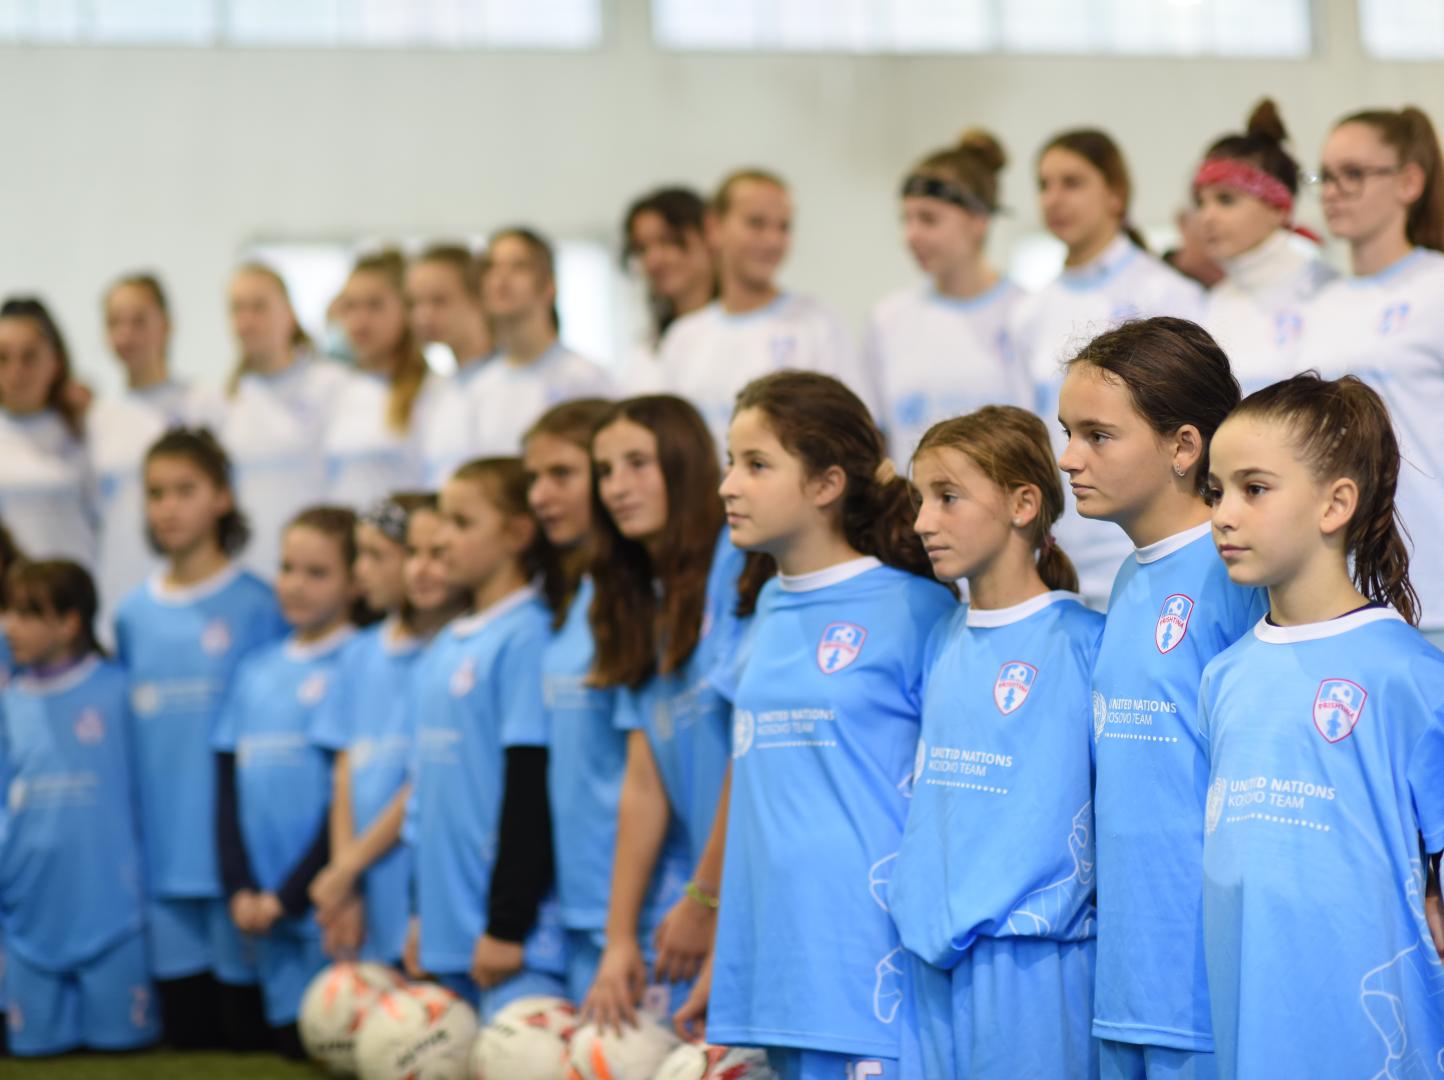 KFV Girls' Football Club Prishtina